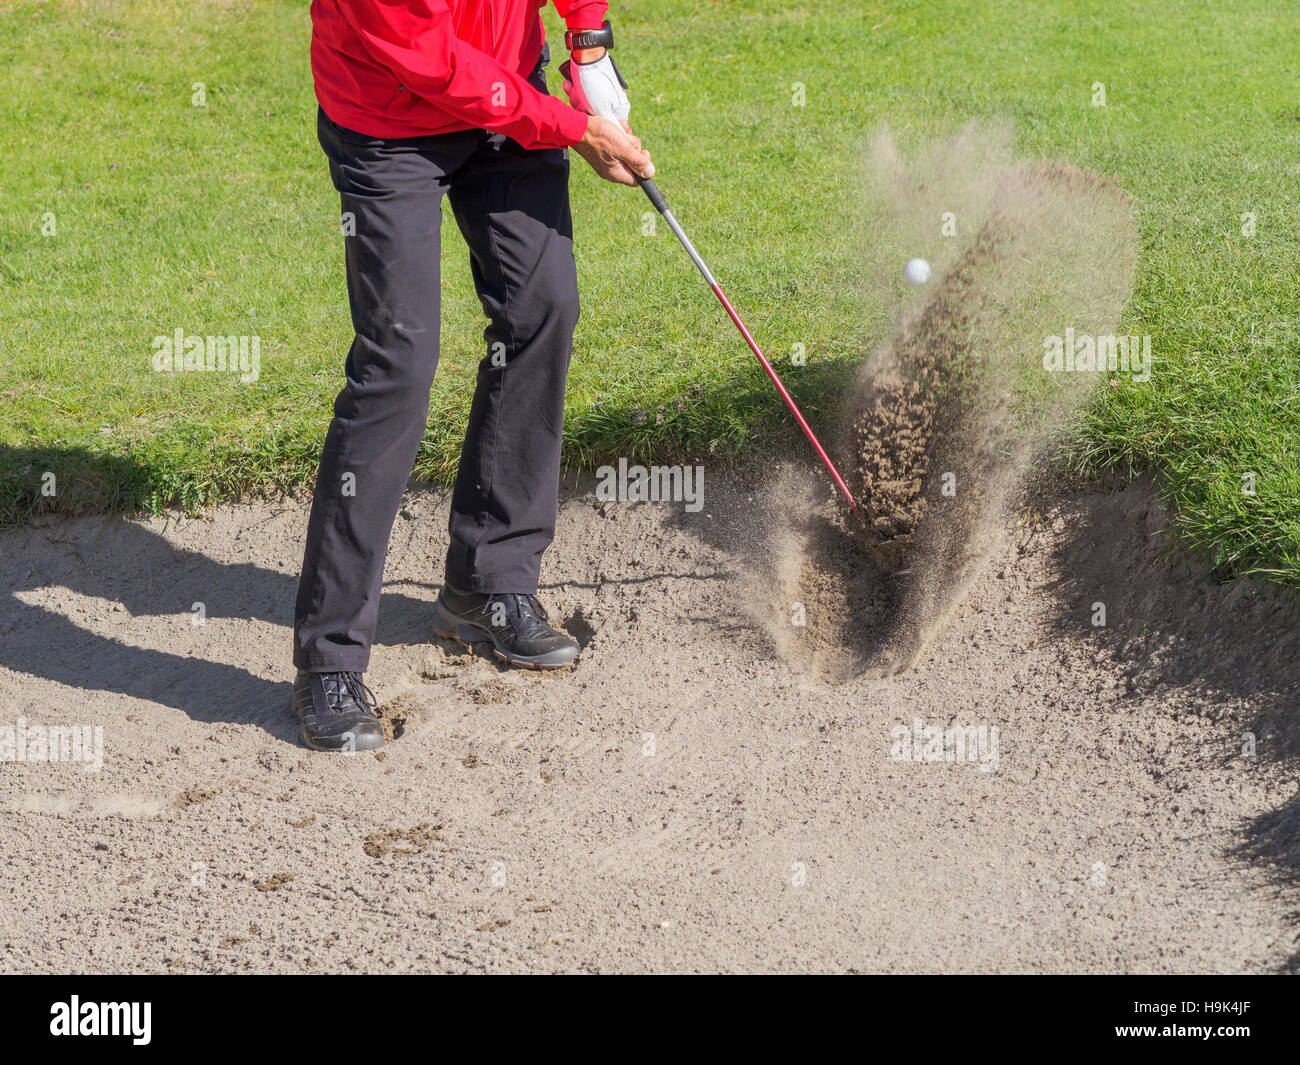 Golfista jugando bunker disparos, vista parcial Foto de stock